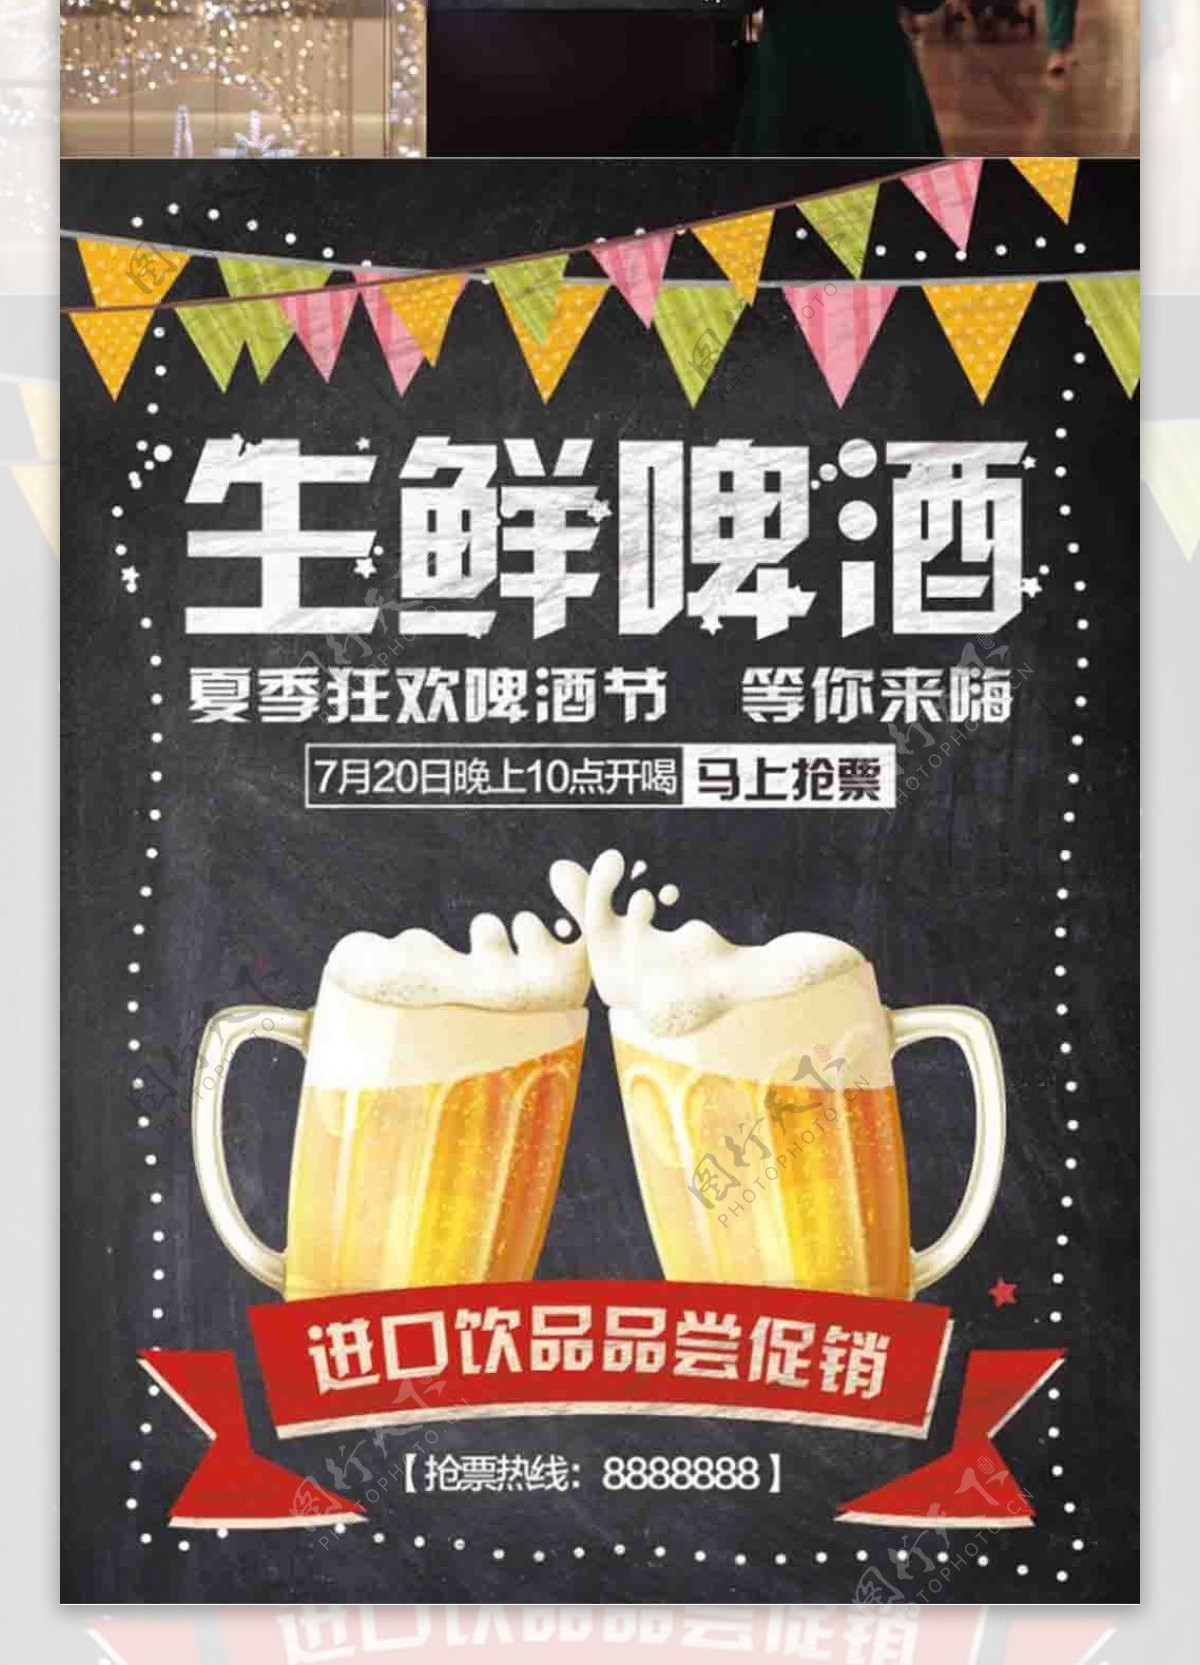 生鲜啤酒促销海报